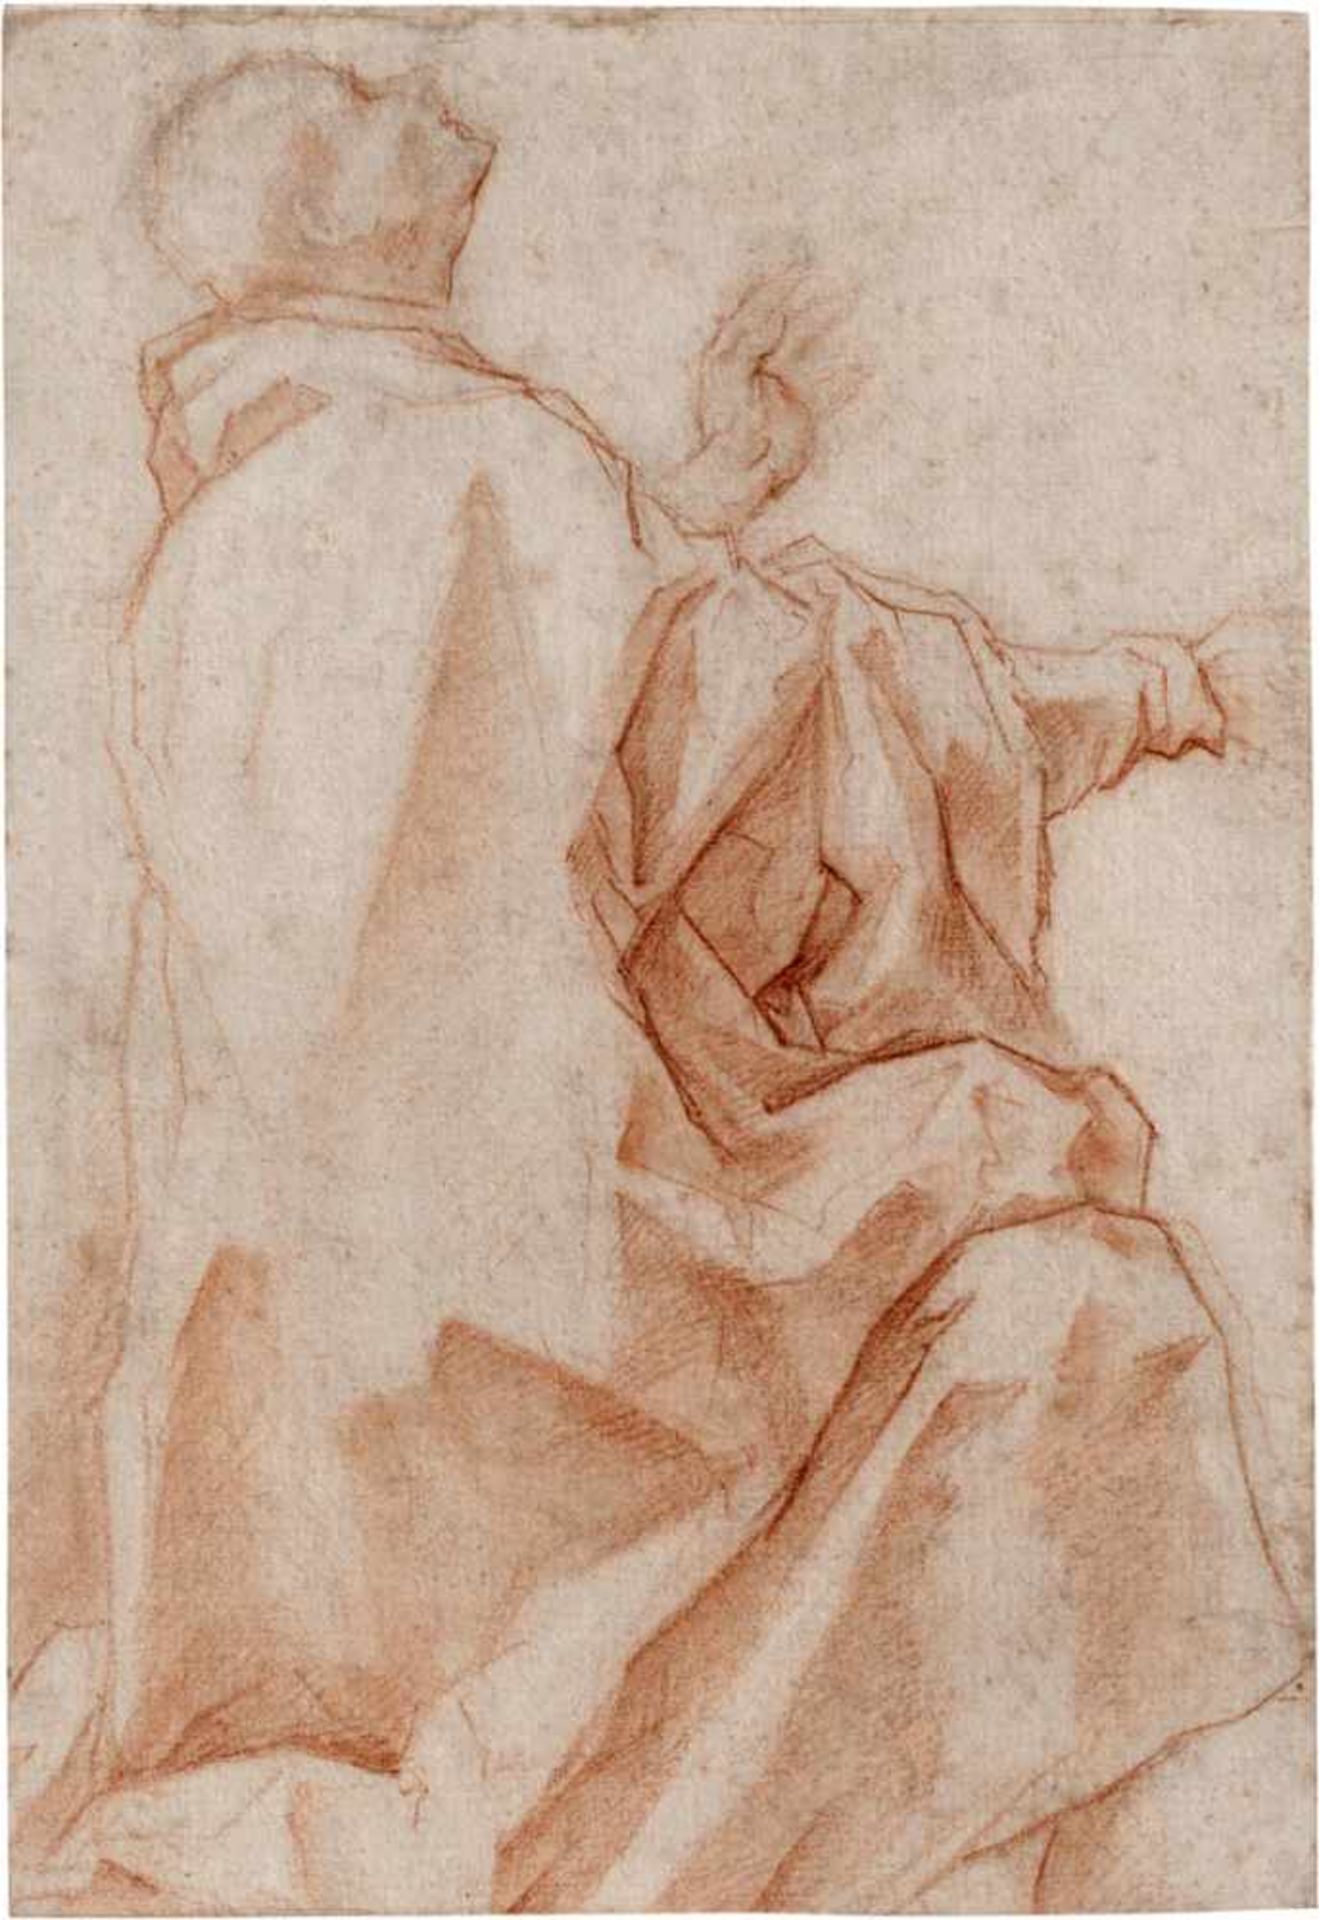 Florentinisch: 16. Jh. Gewandstudie eines knieenden, nach oben blickenden Mannes